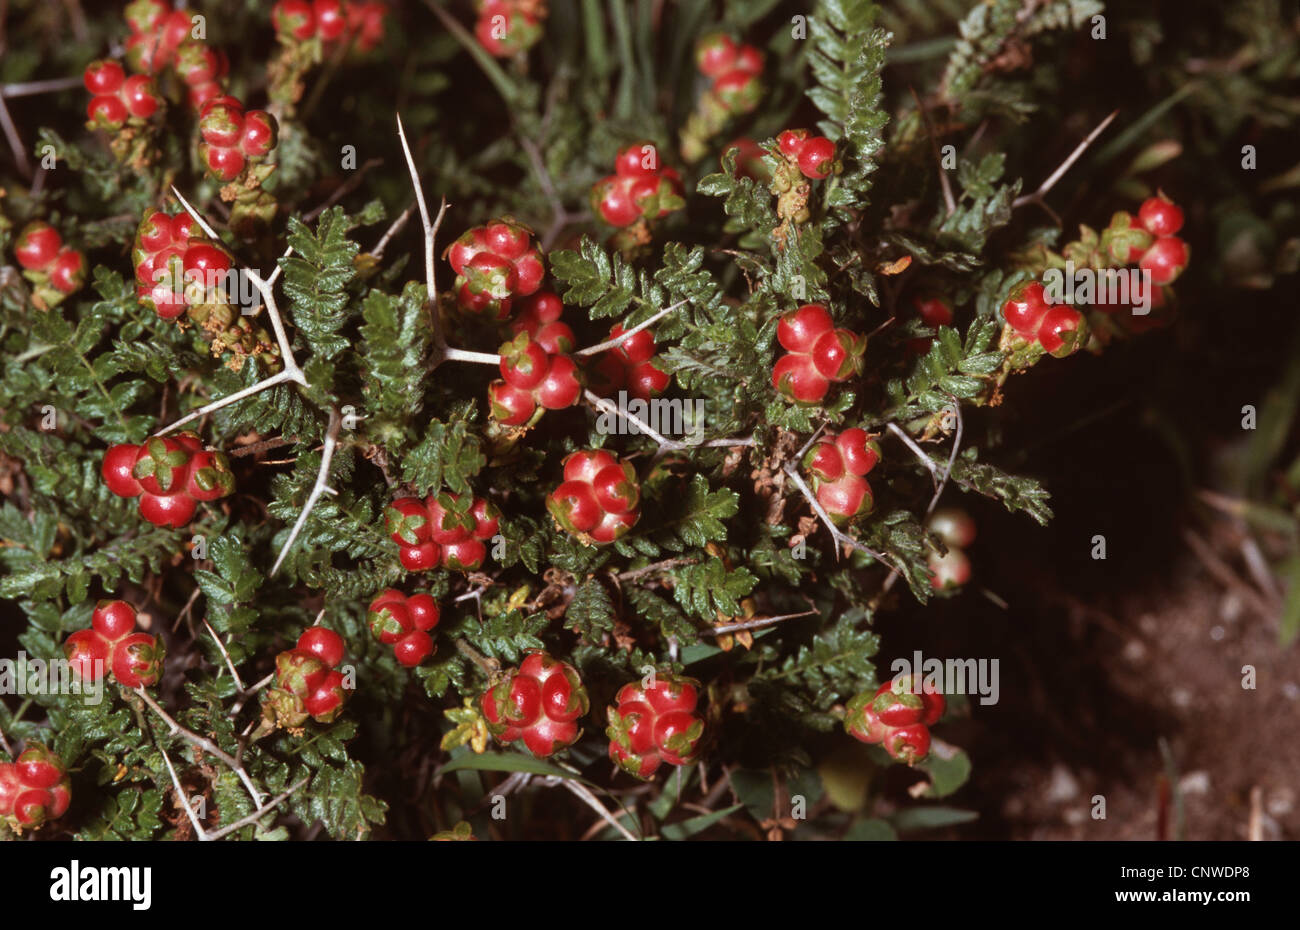 Thorny burnet (Sarcopoterium spinosum, Poterium spinosum), fruiting Stock Photo